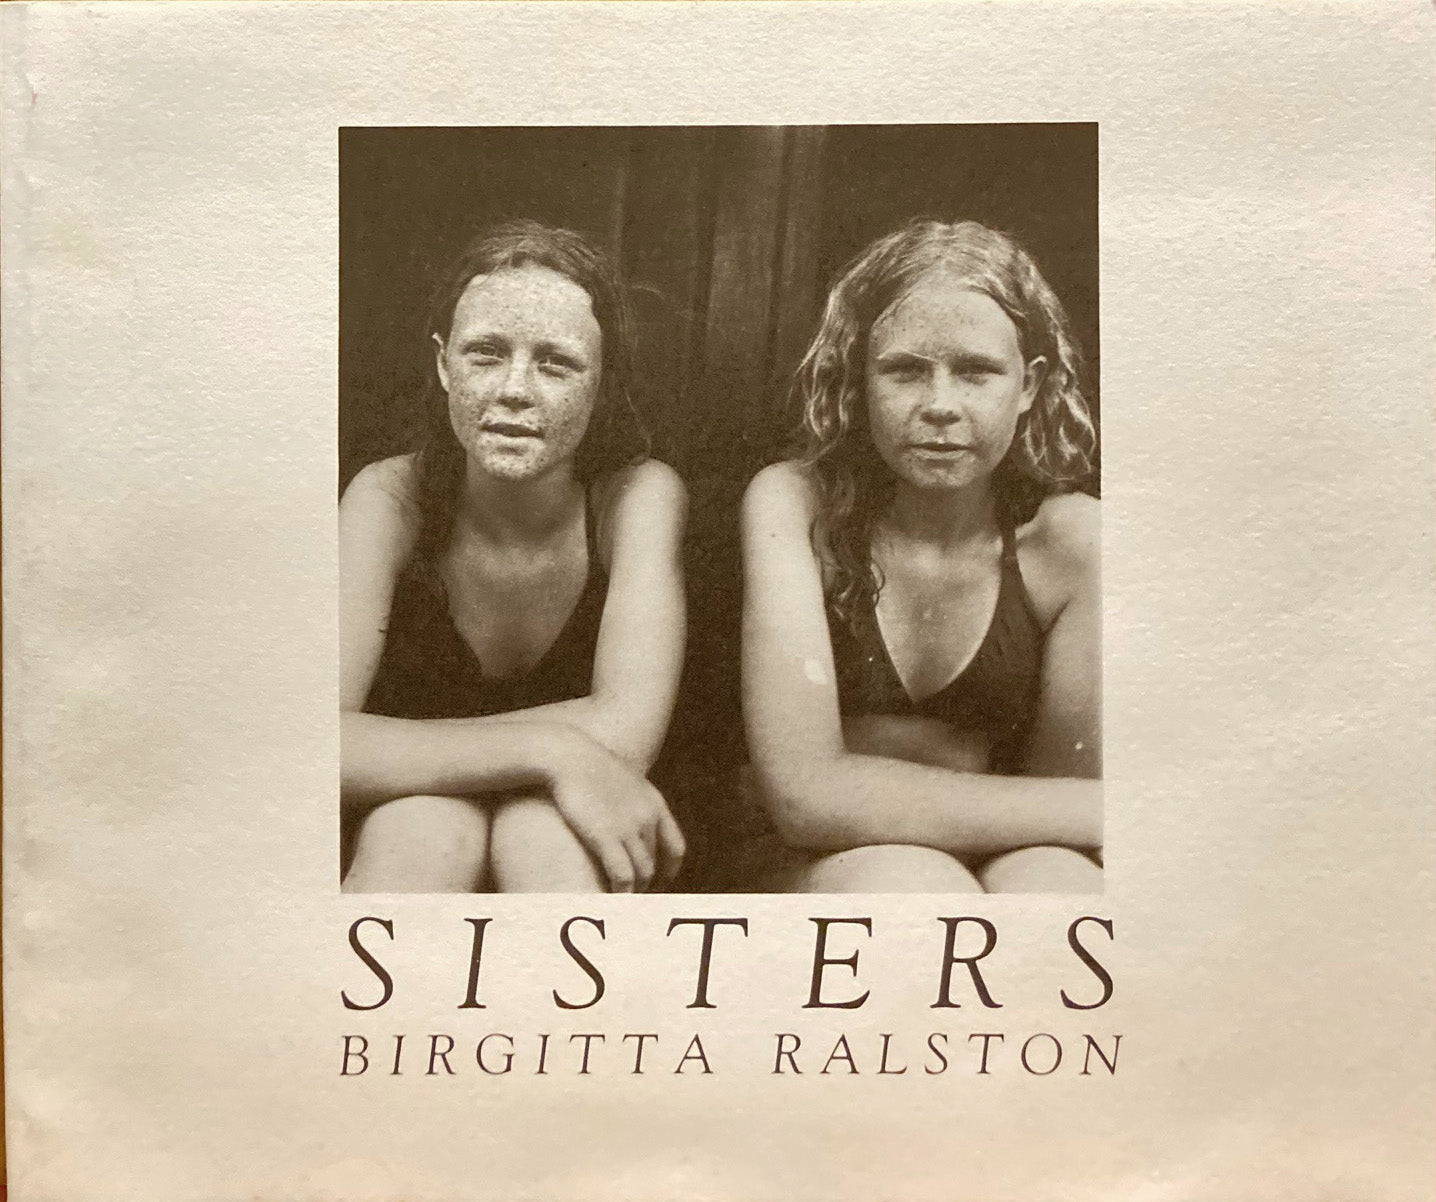 Ralston, Birgitta. Birgitta Ralston: Sisters. Photographic Portraits.